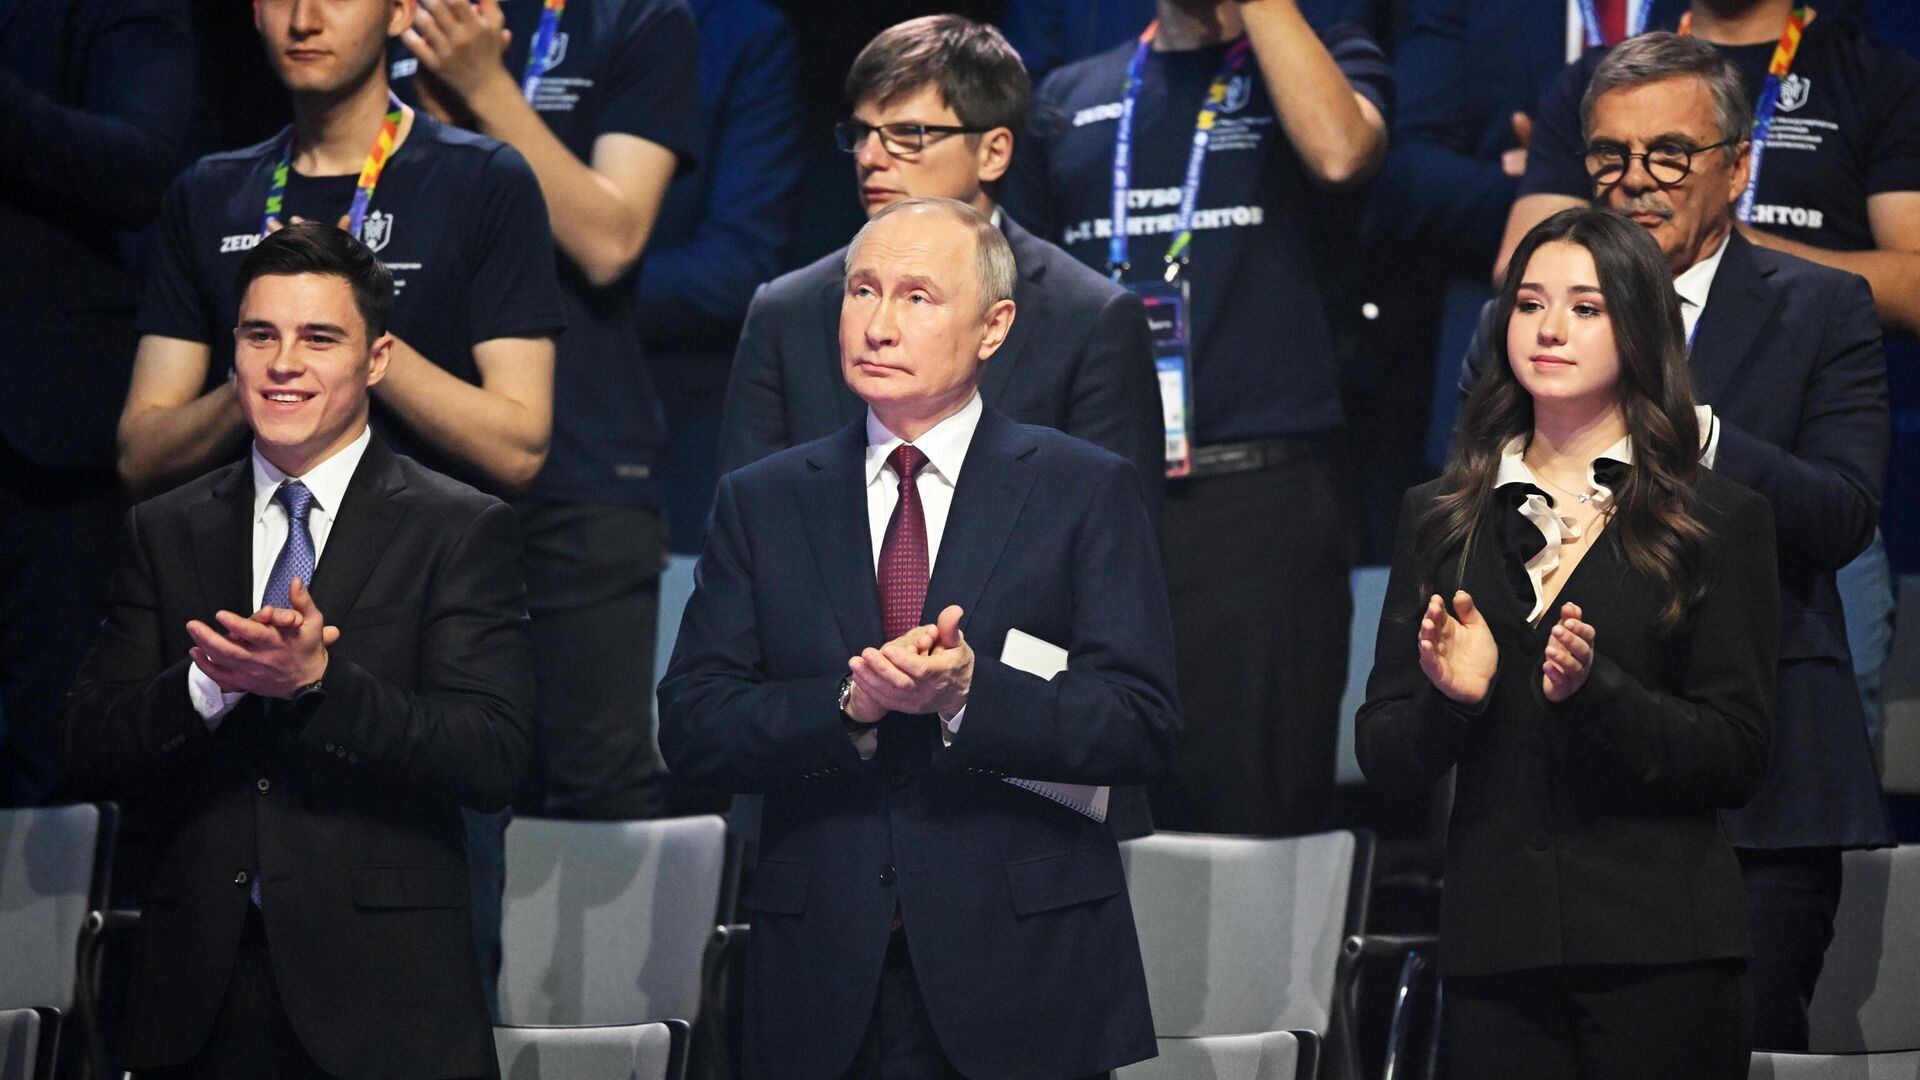 "Ее использовали": МОК разоблачил Путина в подставе 17-летней фигуристки